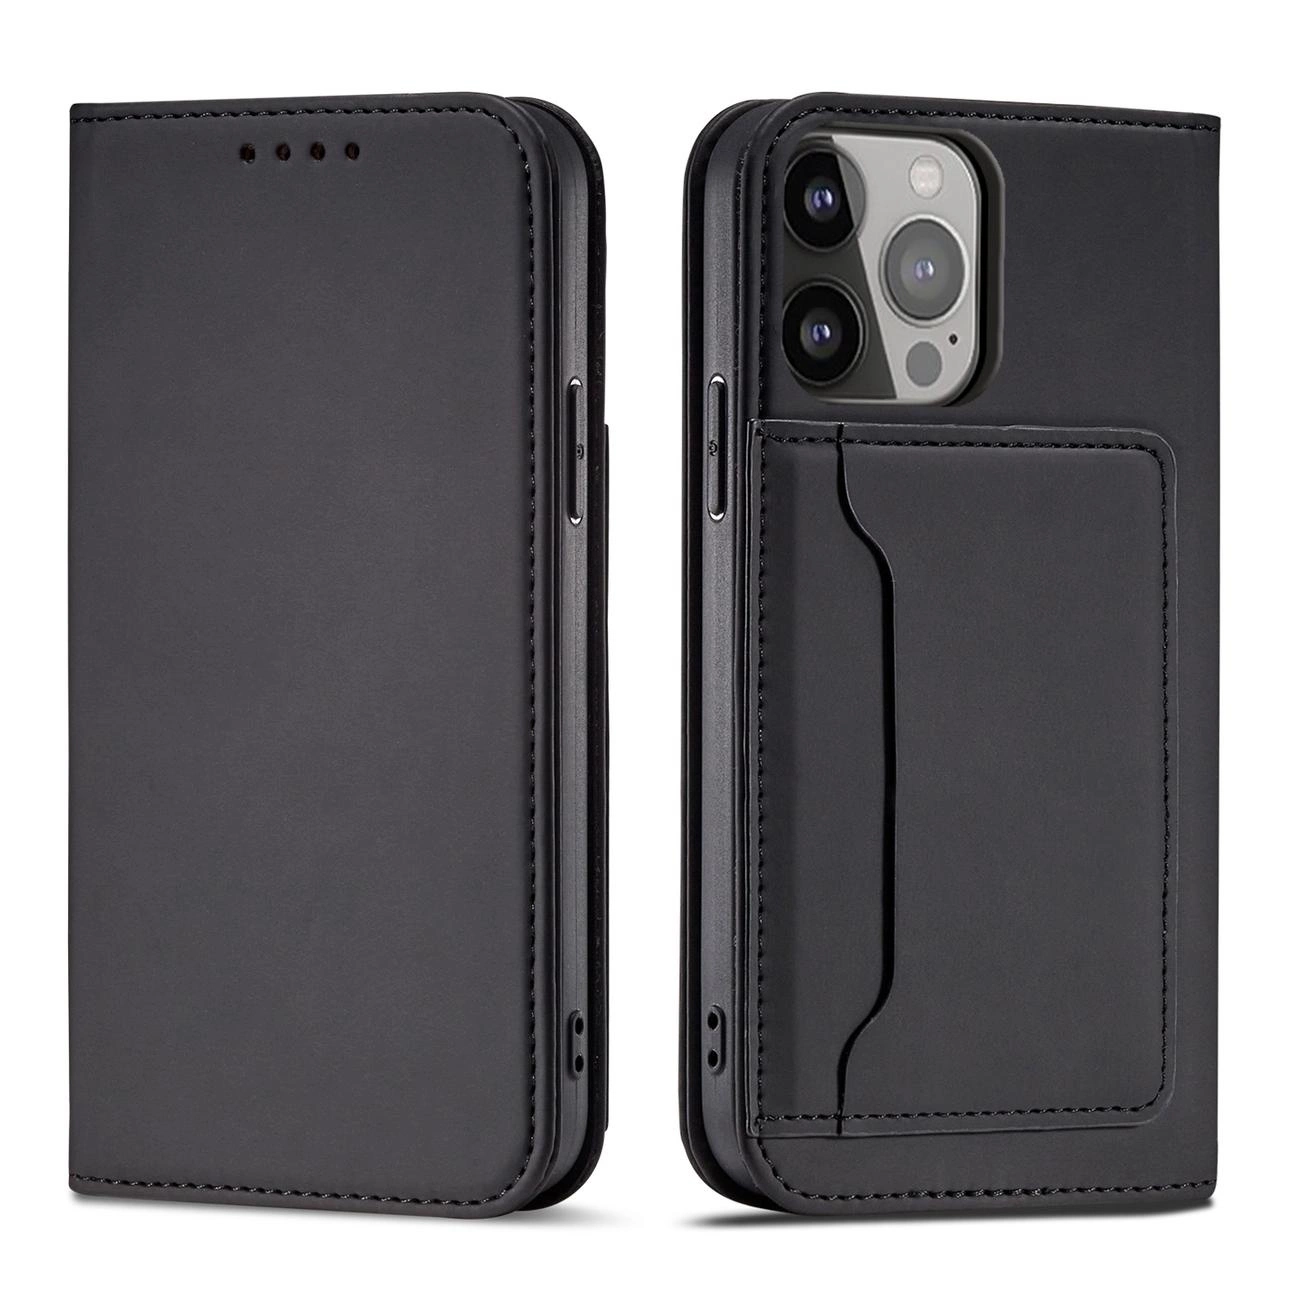 Hurtel Magnet Card Case pro iPhone 13 mini card wallet case card holder black